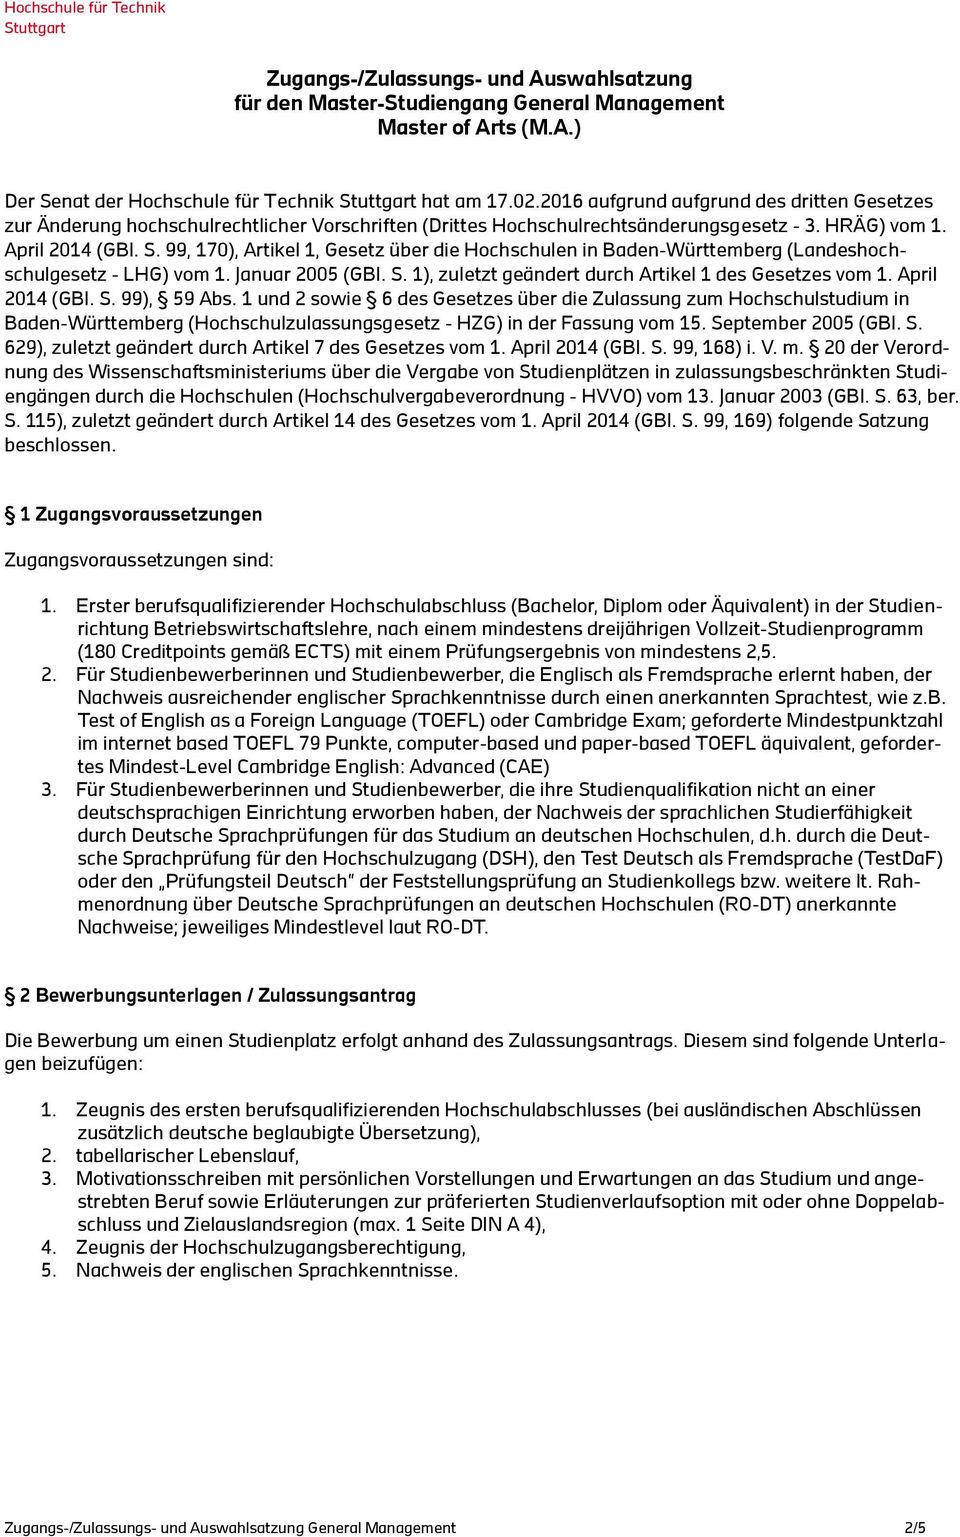 99, 170), Artikel 1, Gesetz über die Hochschulen in Baden-Württemberg (Landeshochschulgesetz - LHG) vom 1. Januar 2005 (GBl. S. 1), zuletzt geändert durch Artikel 1 des Gesetzes vom 1.